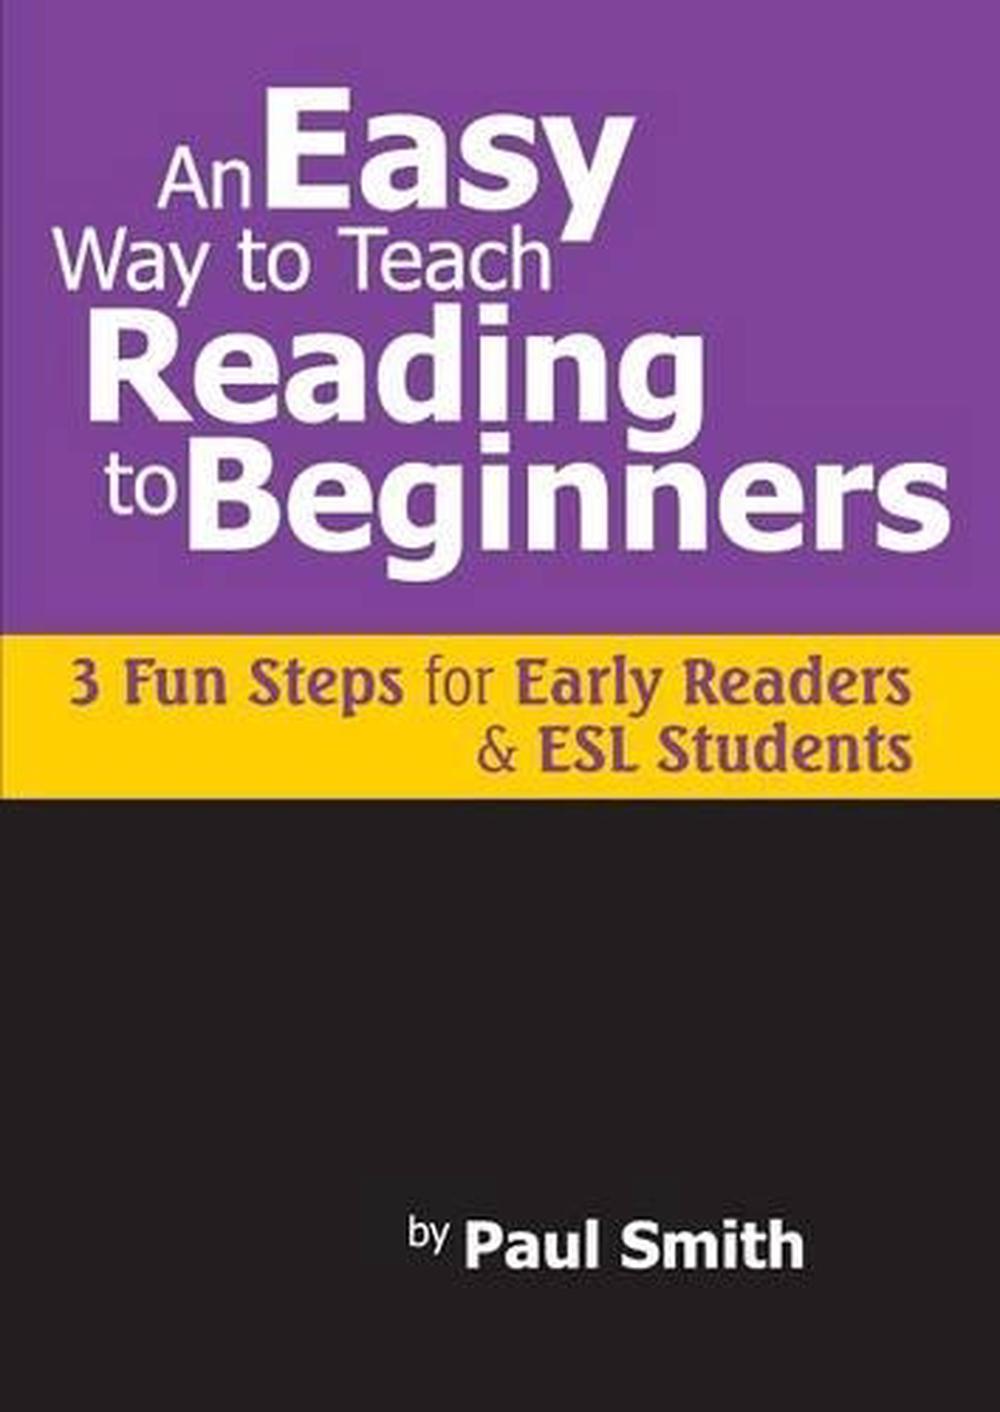 paf reading program first steps workbook